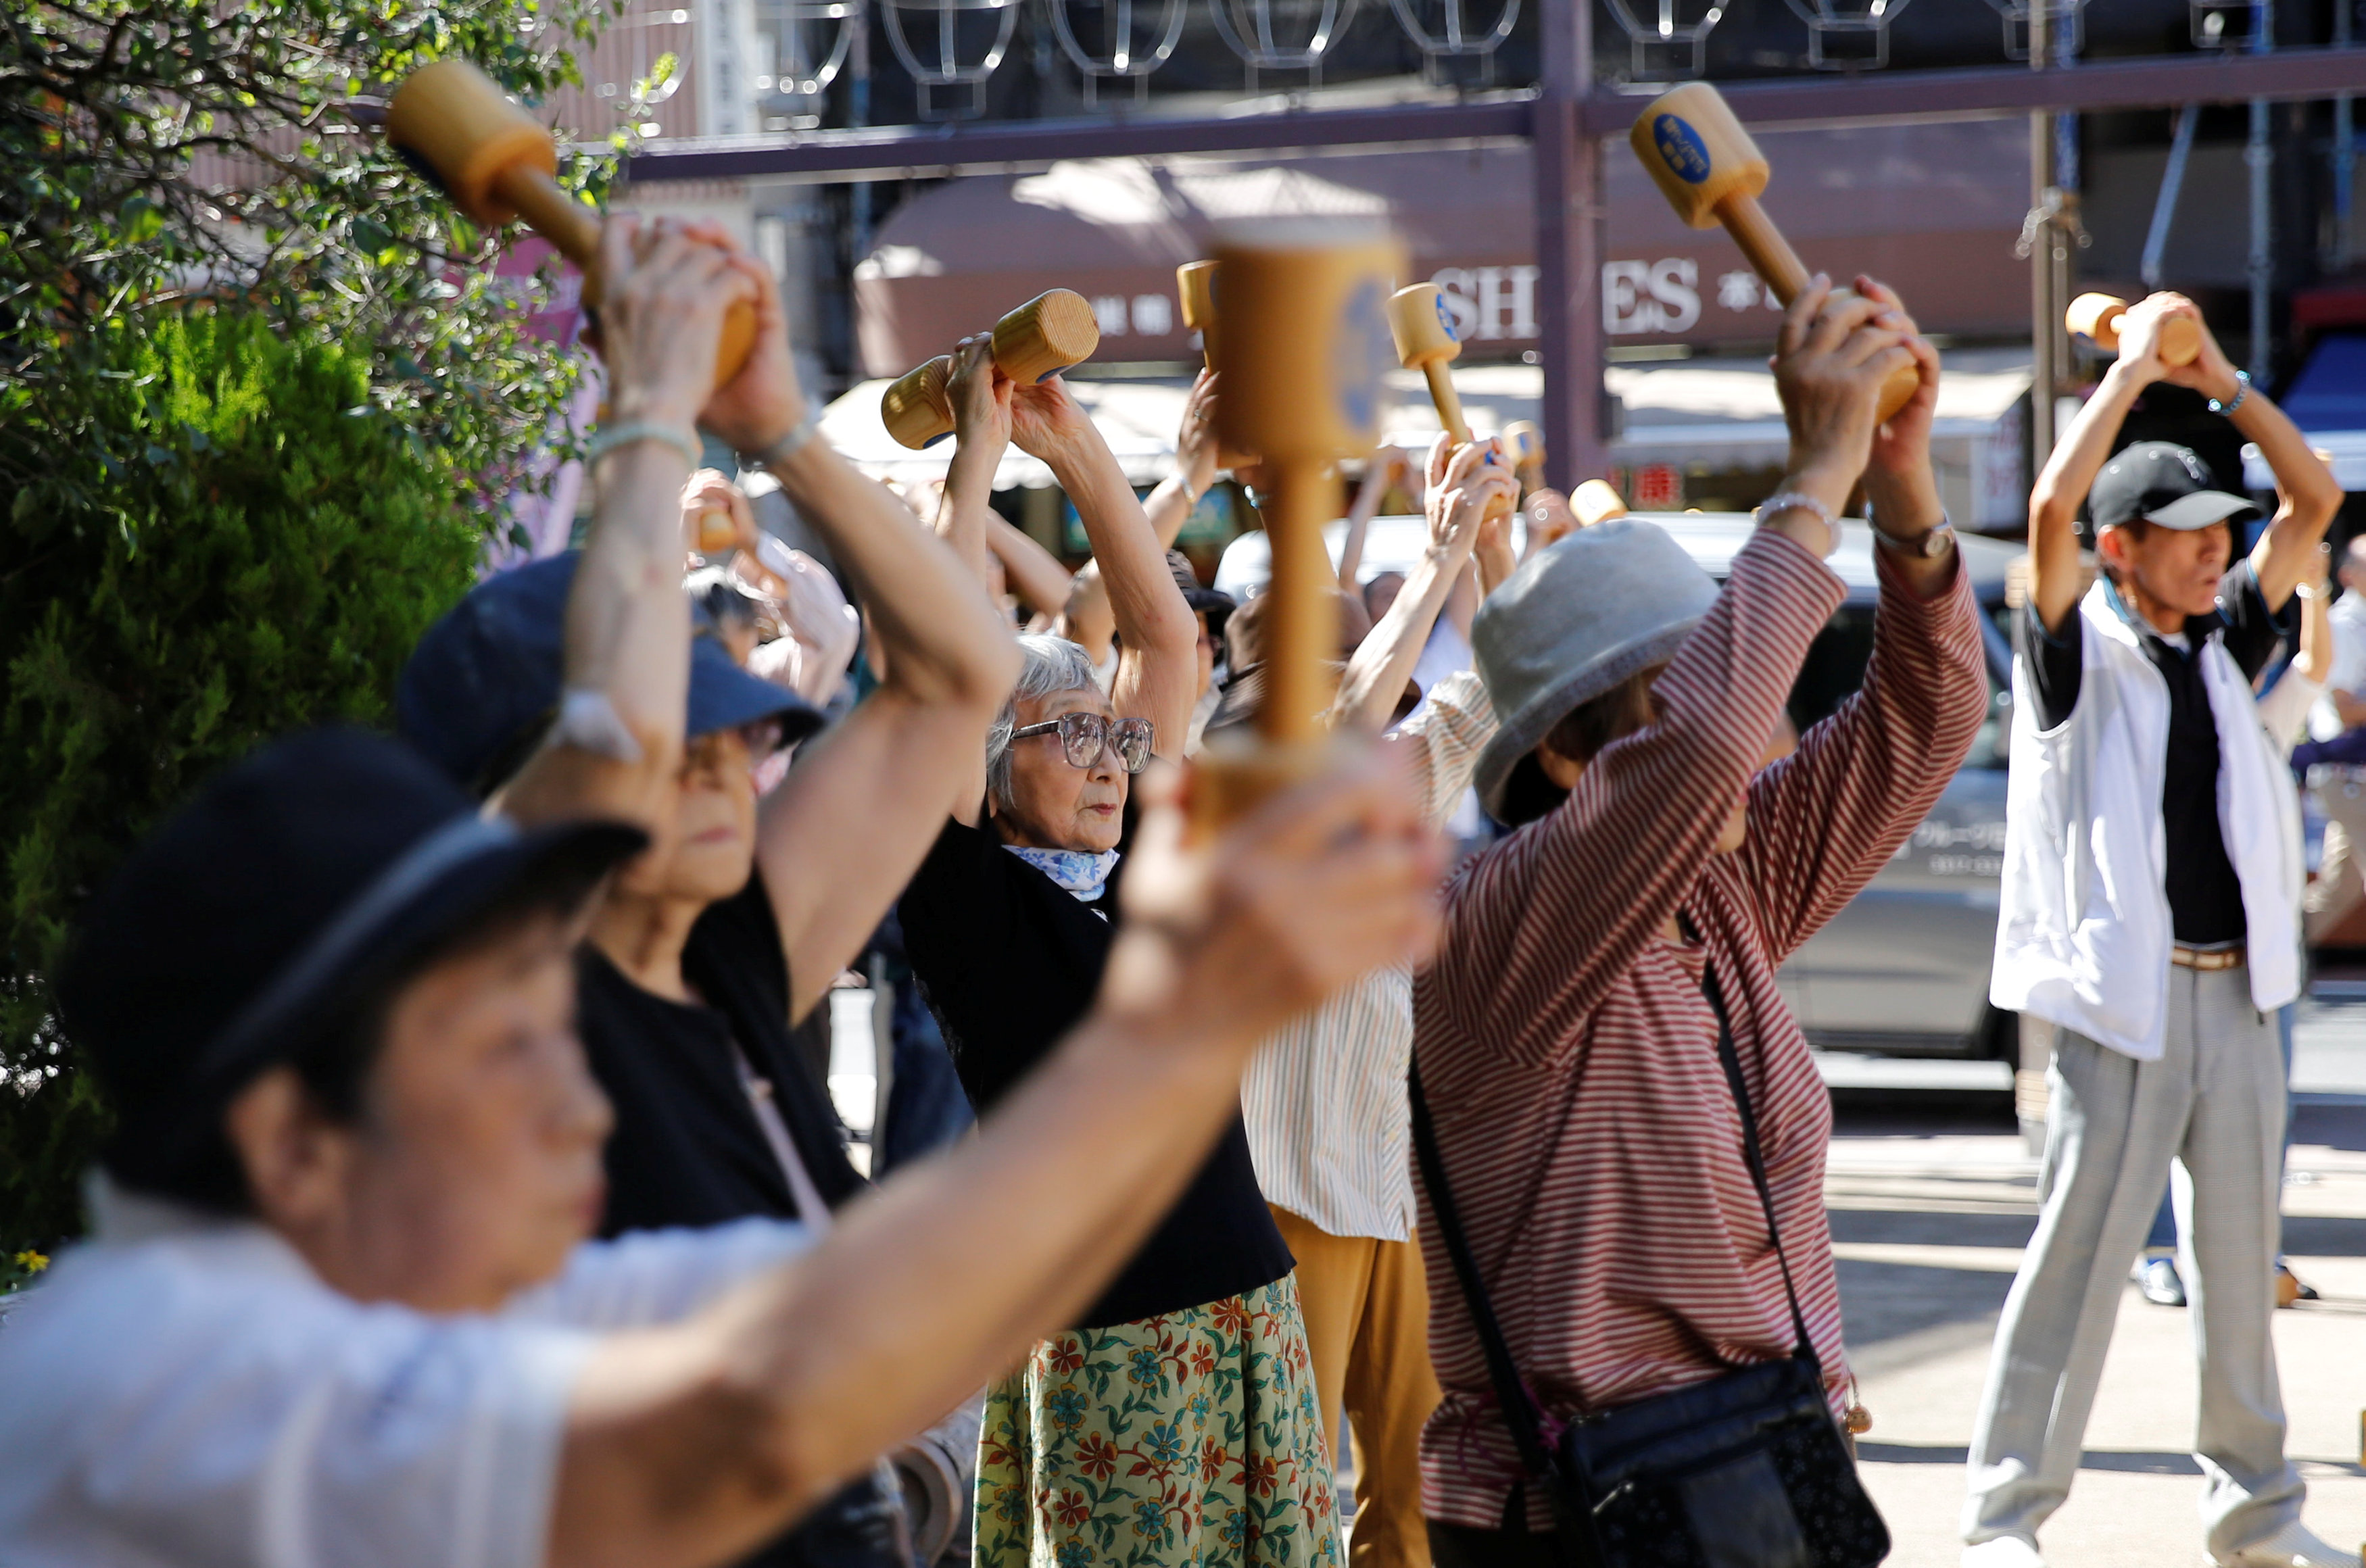 احتفال اليابان بعيد احترام المسنين بلعب الرياضة والرقص